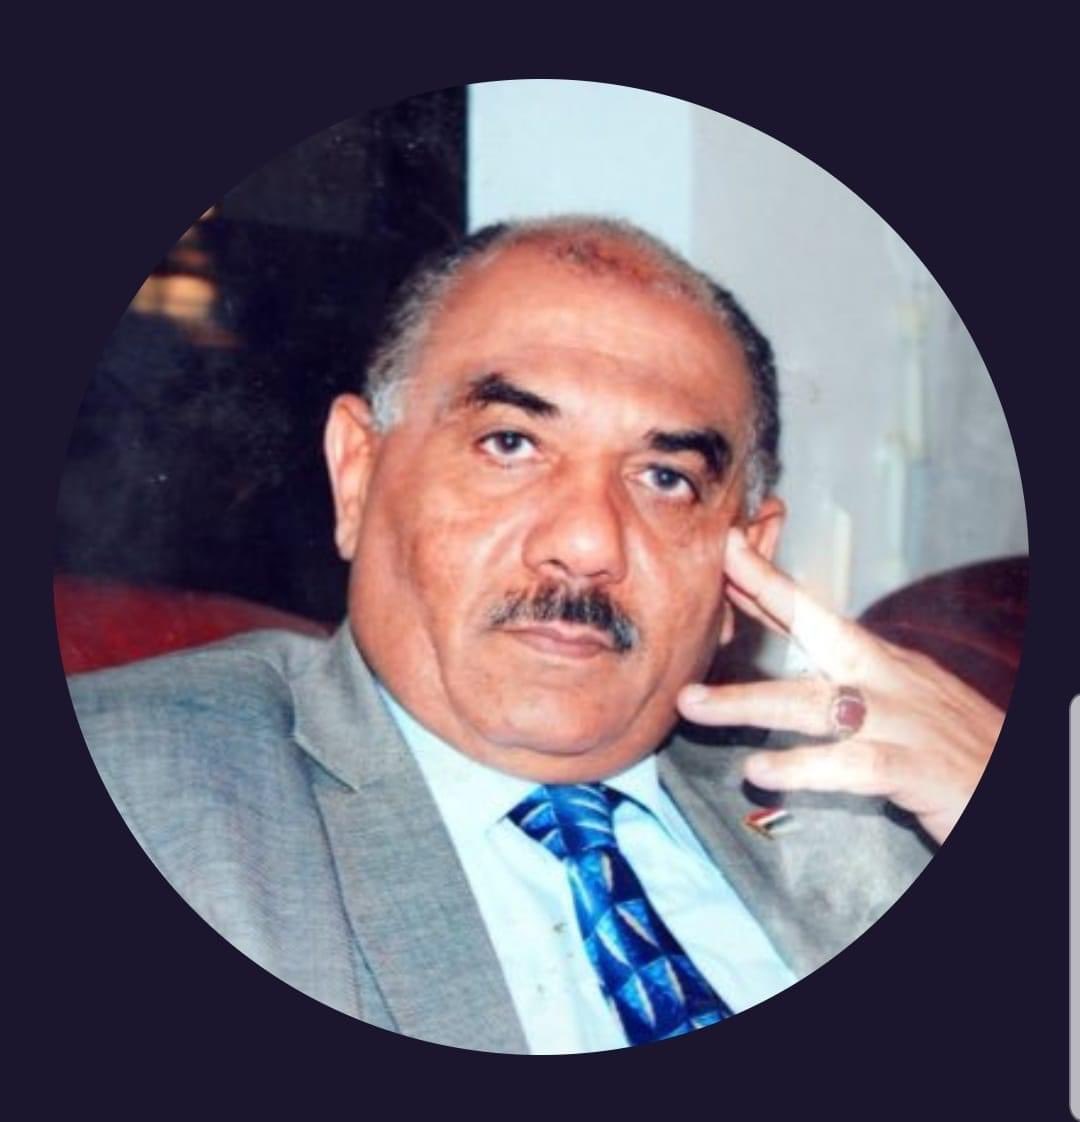  وفاة وزير إعلام يمني سابق في العاصمة المصرية القاهرة